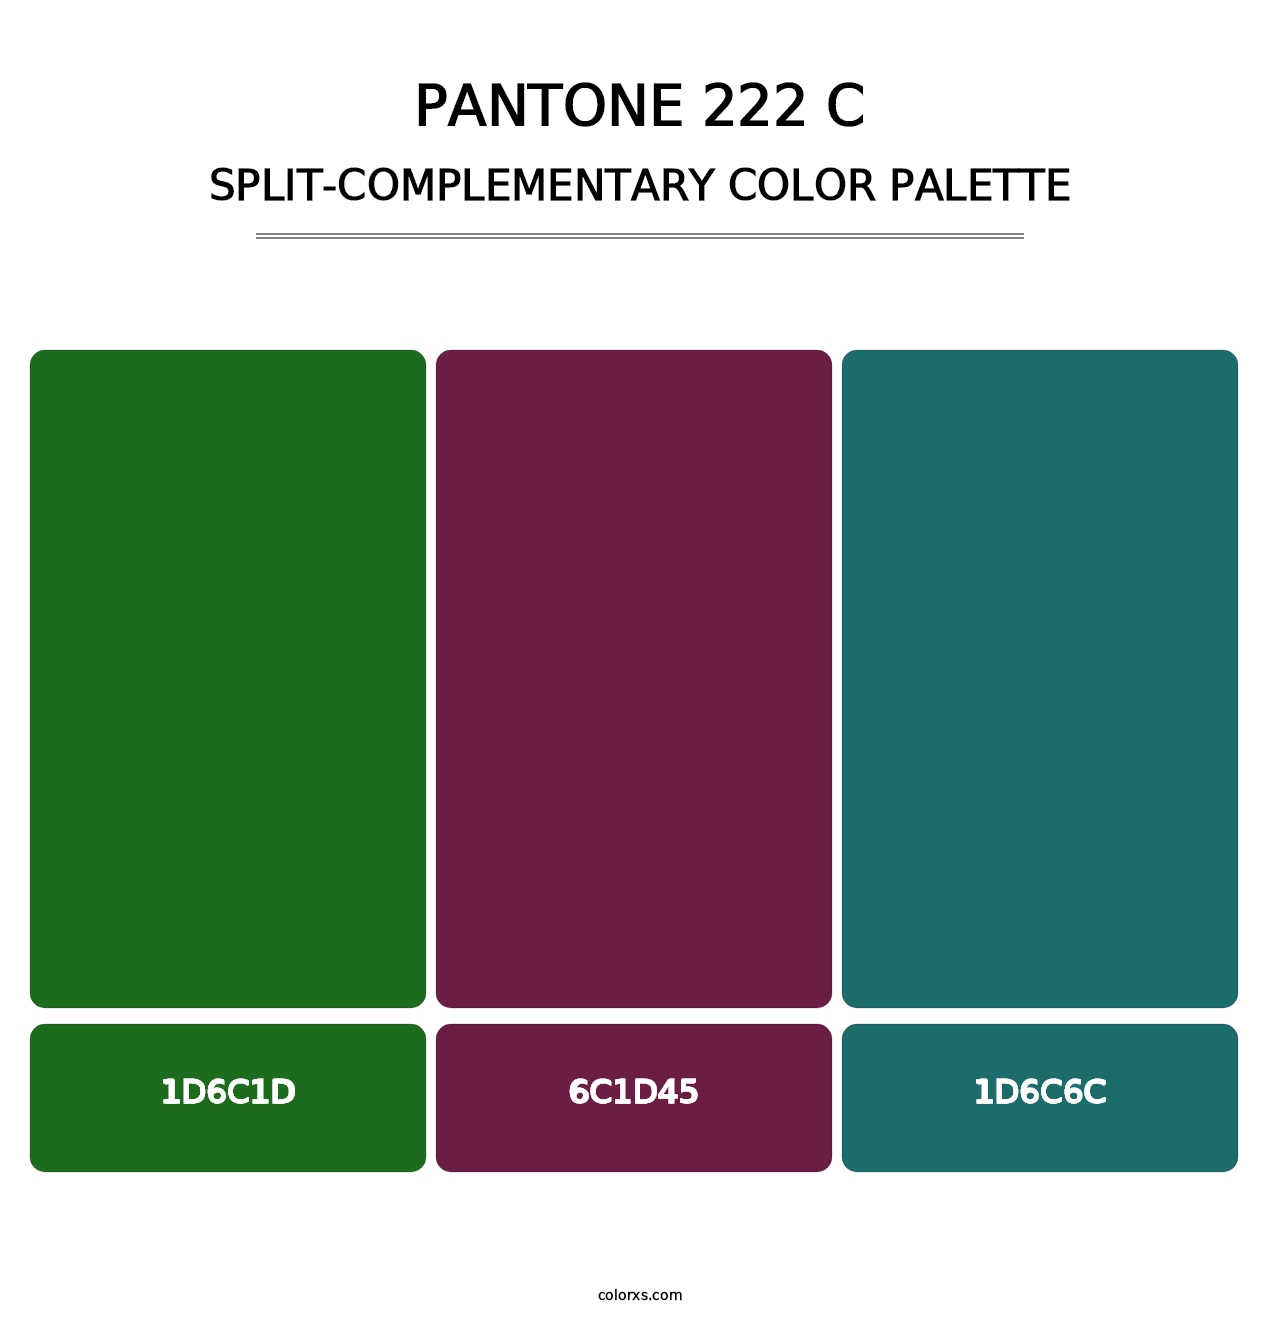 PANTONE 222 C - Split-Complementary Color Palette